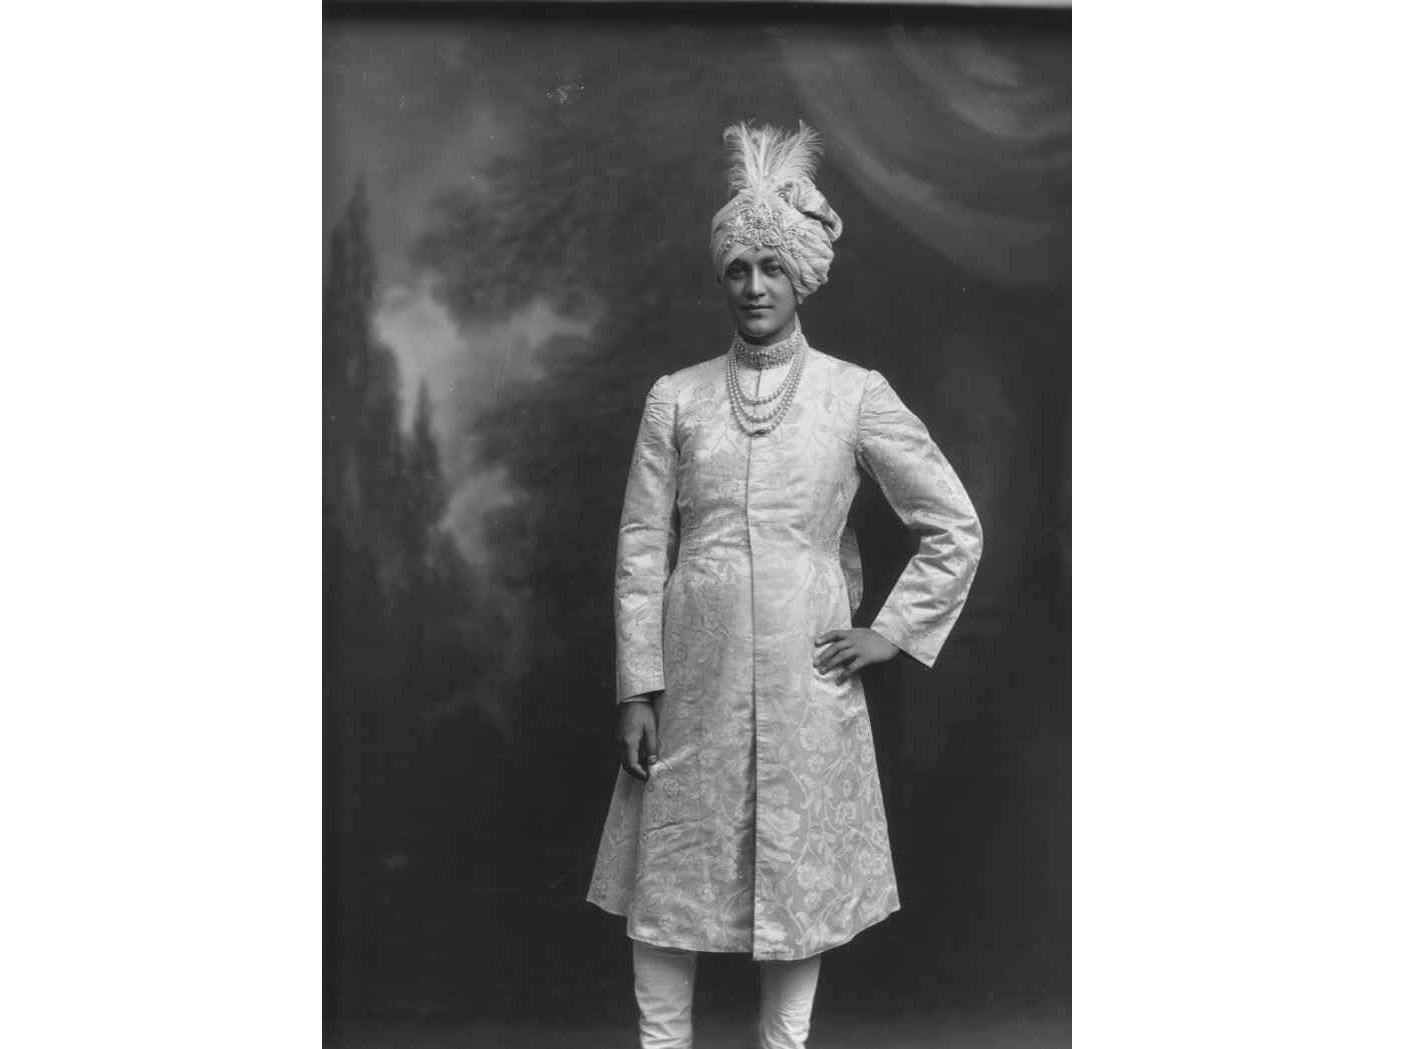  H.H. Maharaja Shri Sir Jitendra Narayan Bhup Bahadur, Maharaja of Cooch-Behar, KCSI, 1913